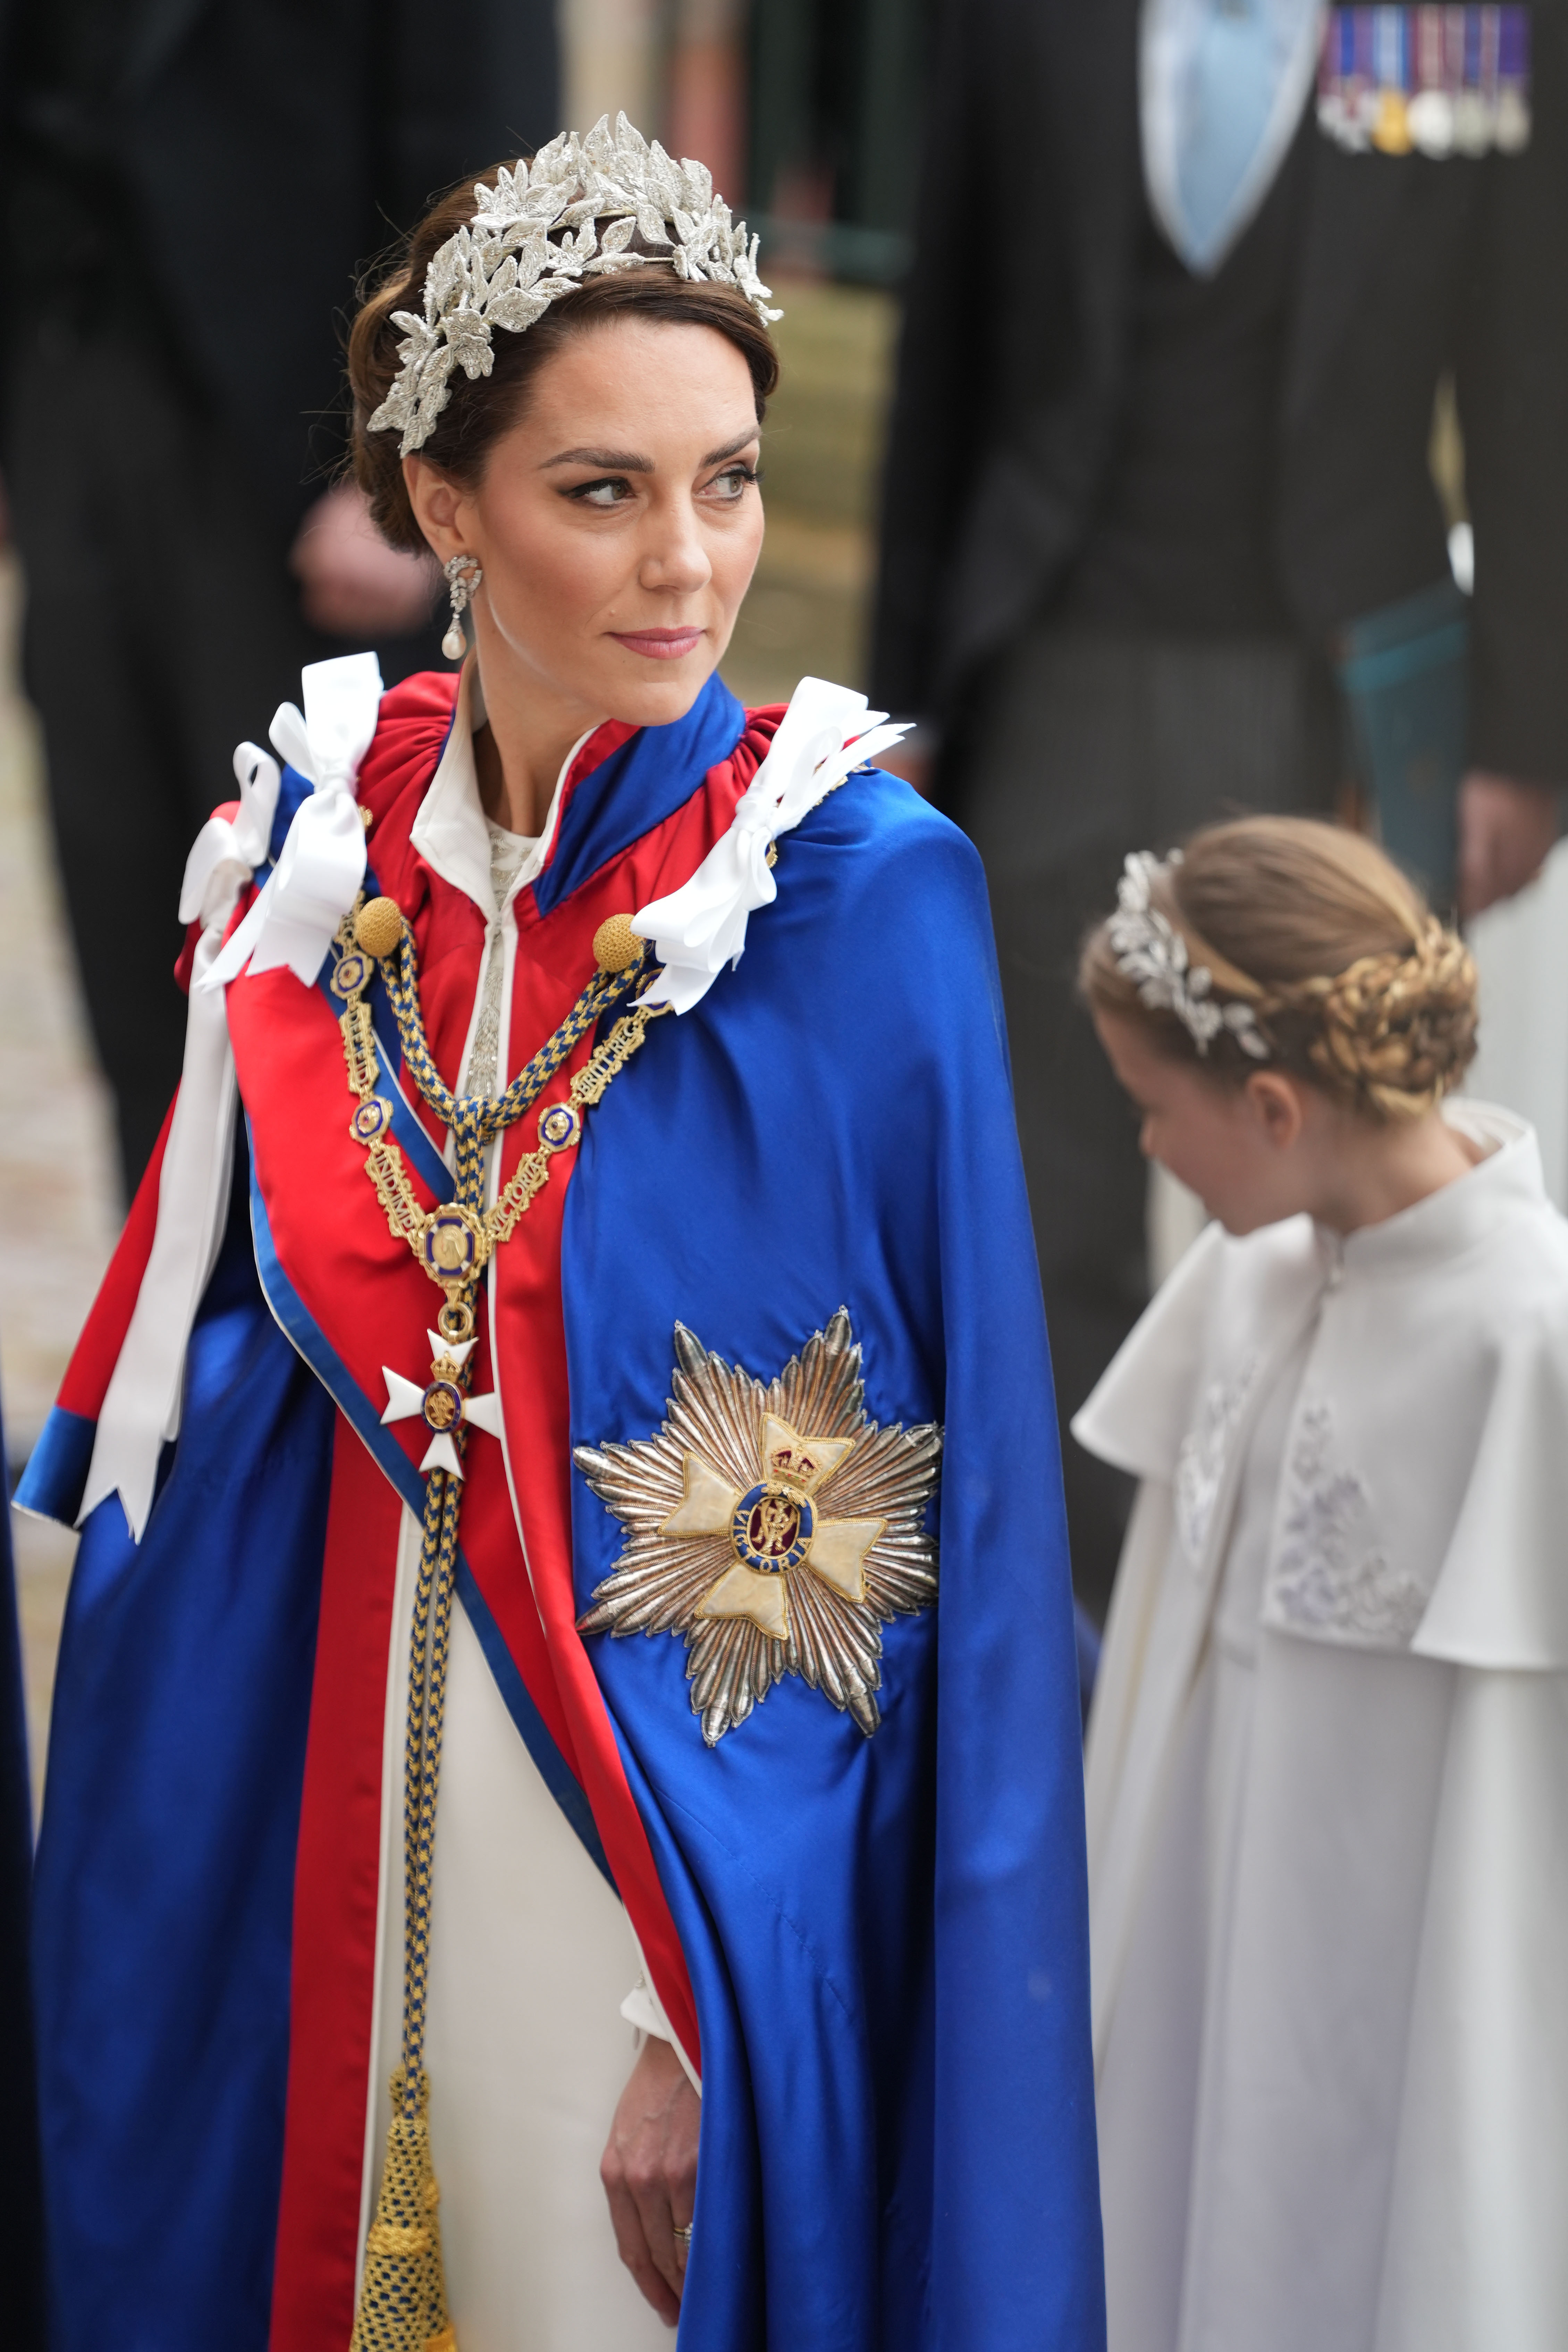 La princesse de Galles, Kate Middleton, au couronnement du roi Charles III à Londres en 2023 | Source : Getty Images